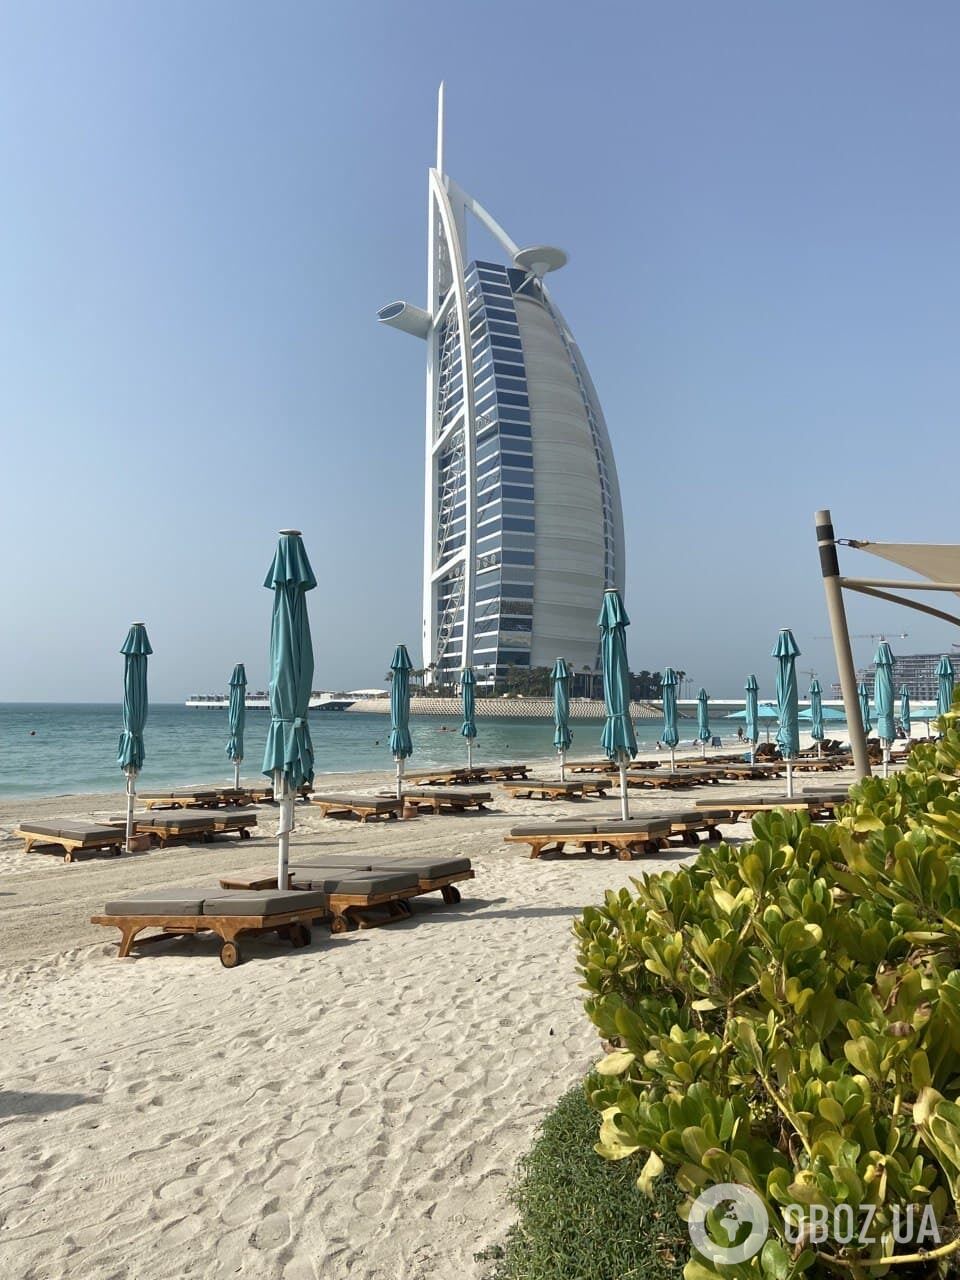 Пляж отелей сети Jumeirah.